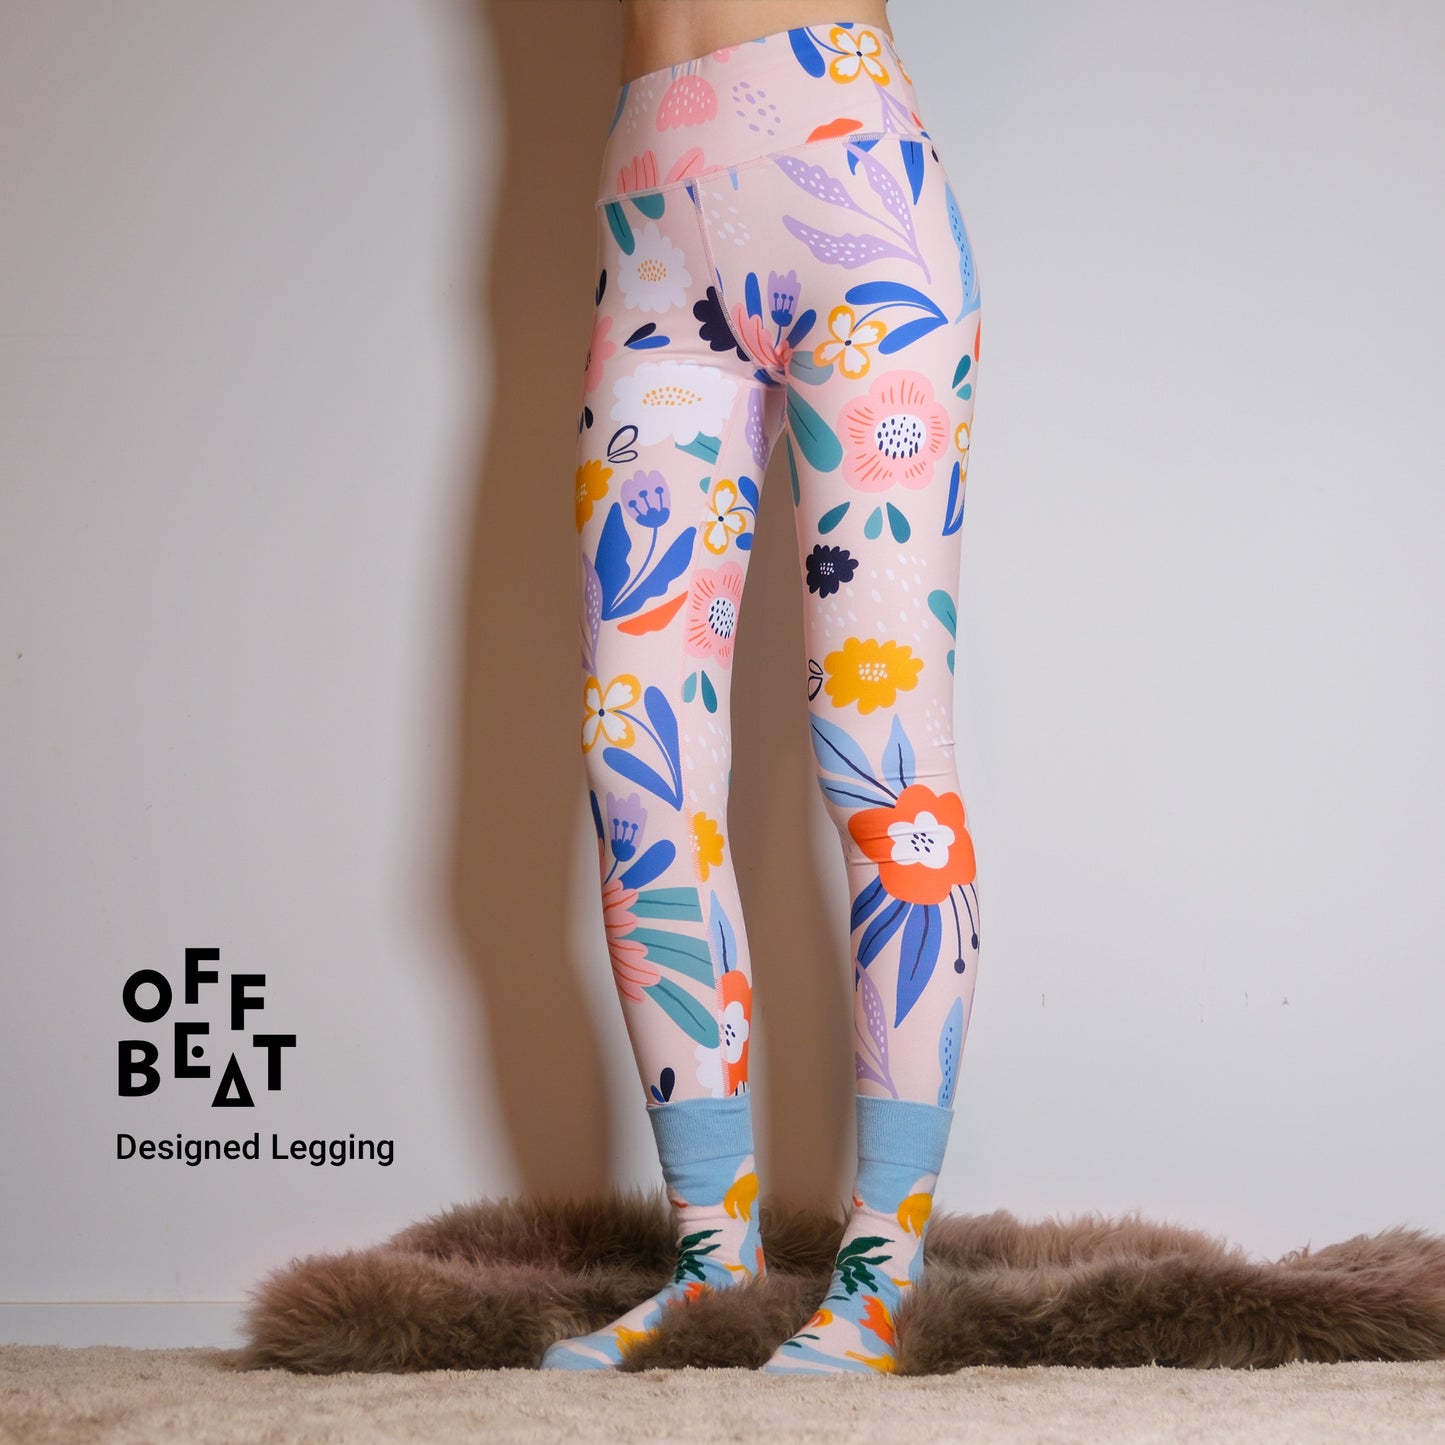 Sport/Yoga designed leggings from Offbeat